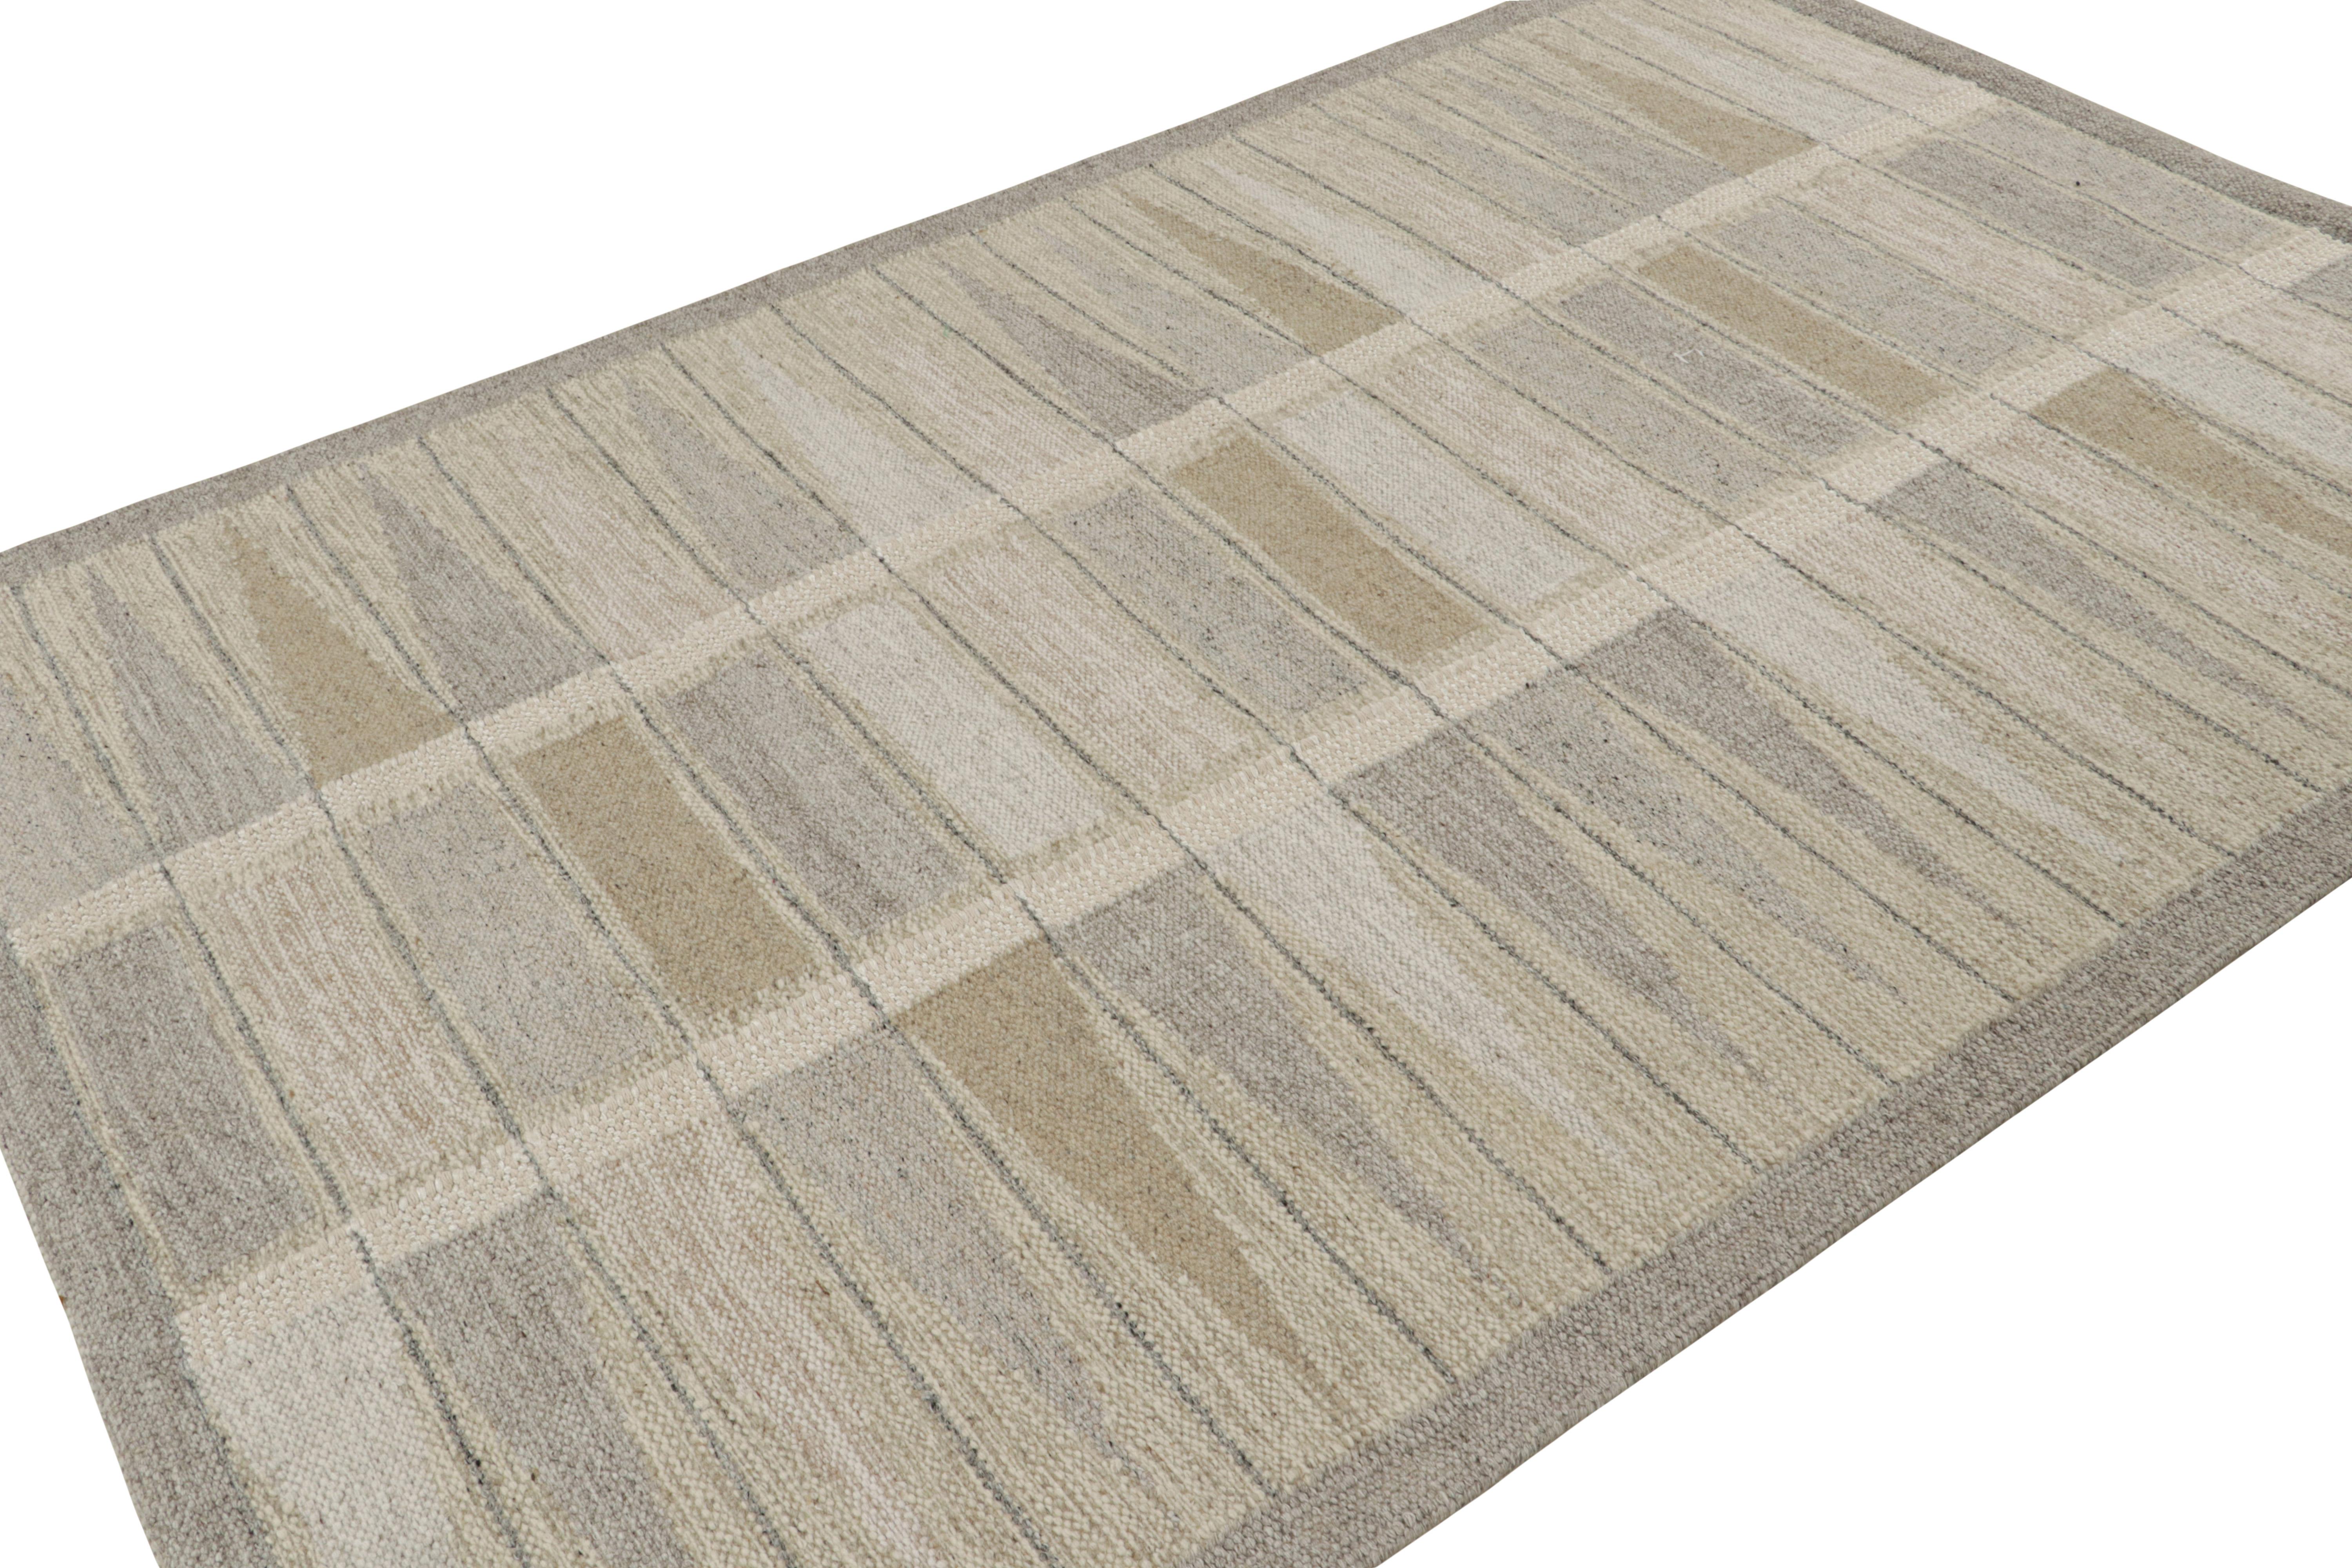 Dieser 6x9 große, individuell gestaltete schwedische Kilim-Teppich gehört zu den Flachgeweben der skandinavischen Teppichkollektion von Rug & Kilim. Das Design des handgewebten Teppichs aus Wolle, Baumwolle und natürlichen Garnen ist von den